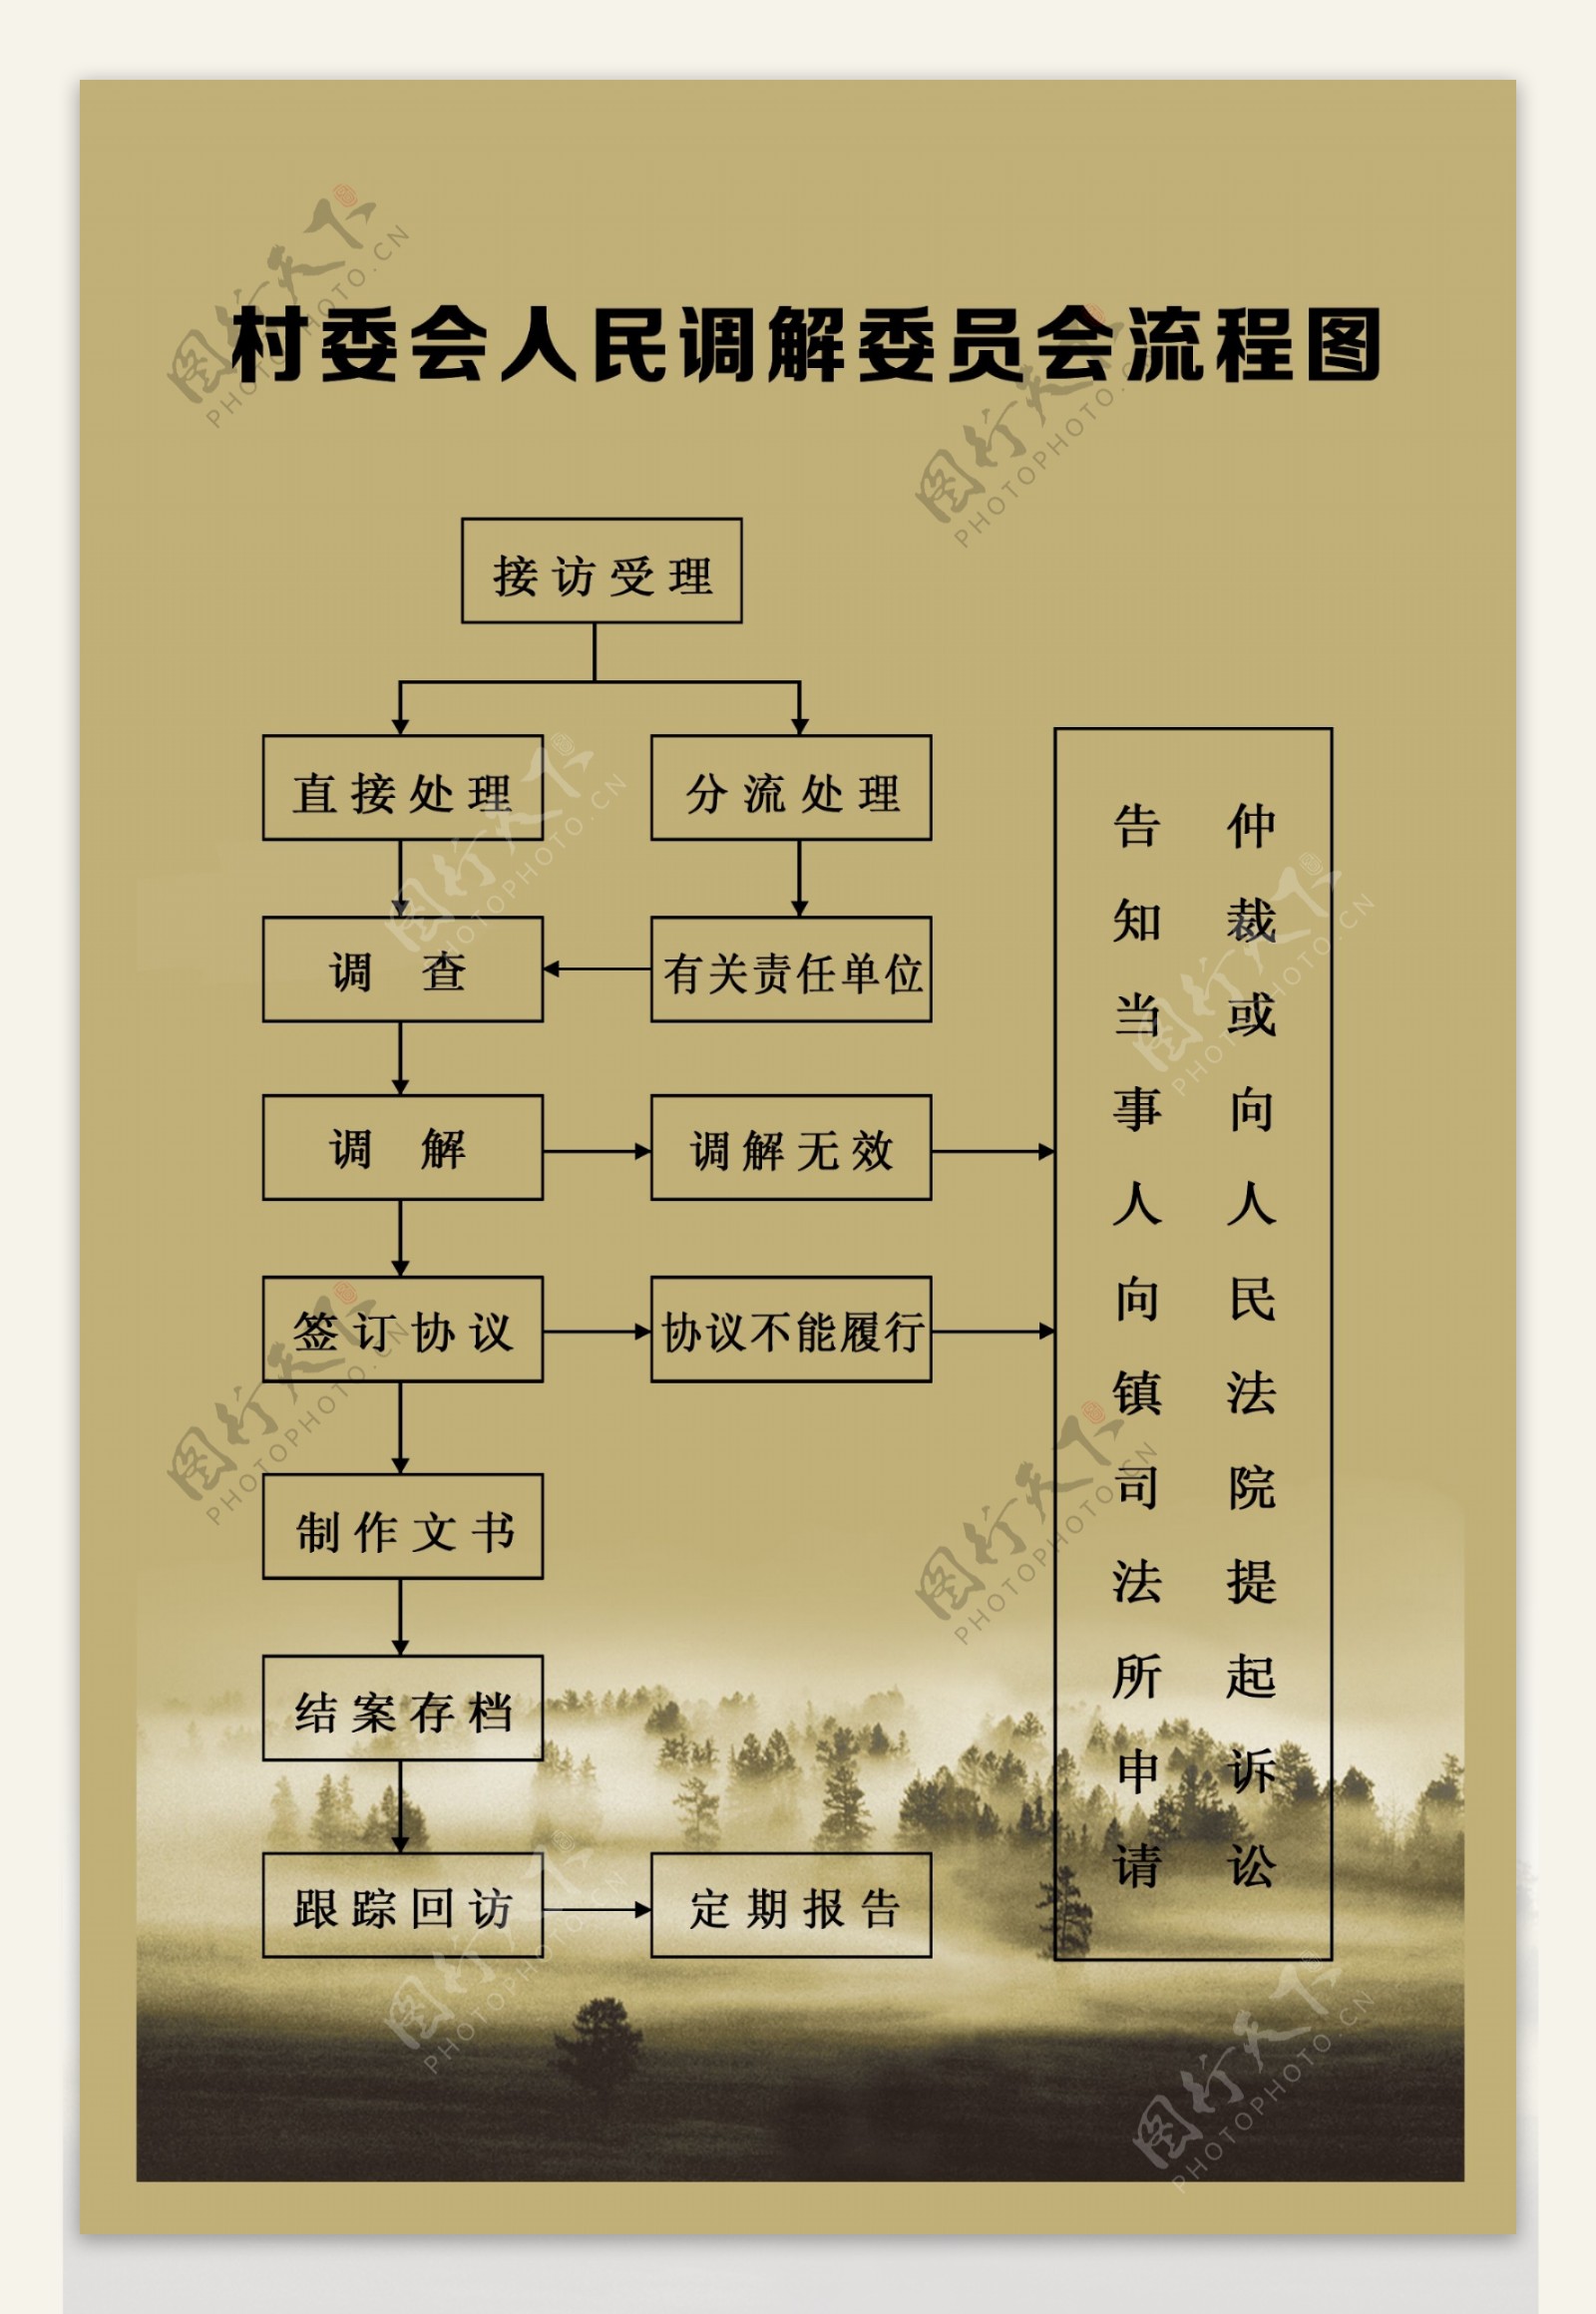 村委会便民服务流程图